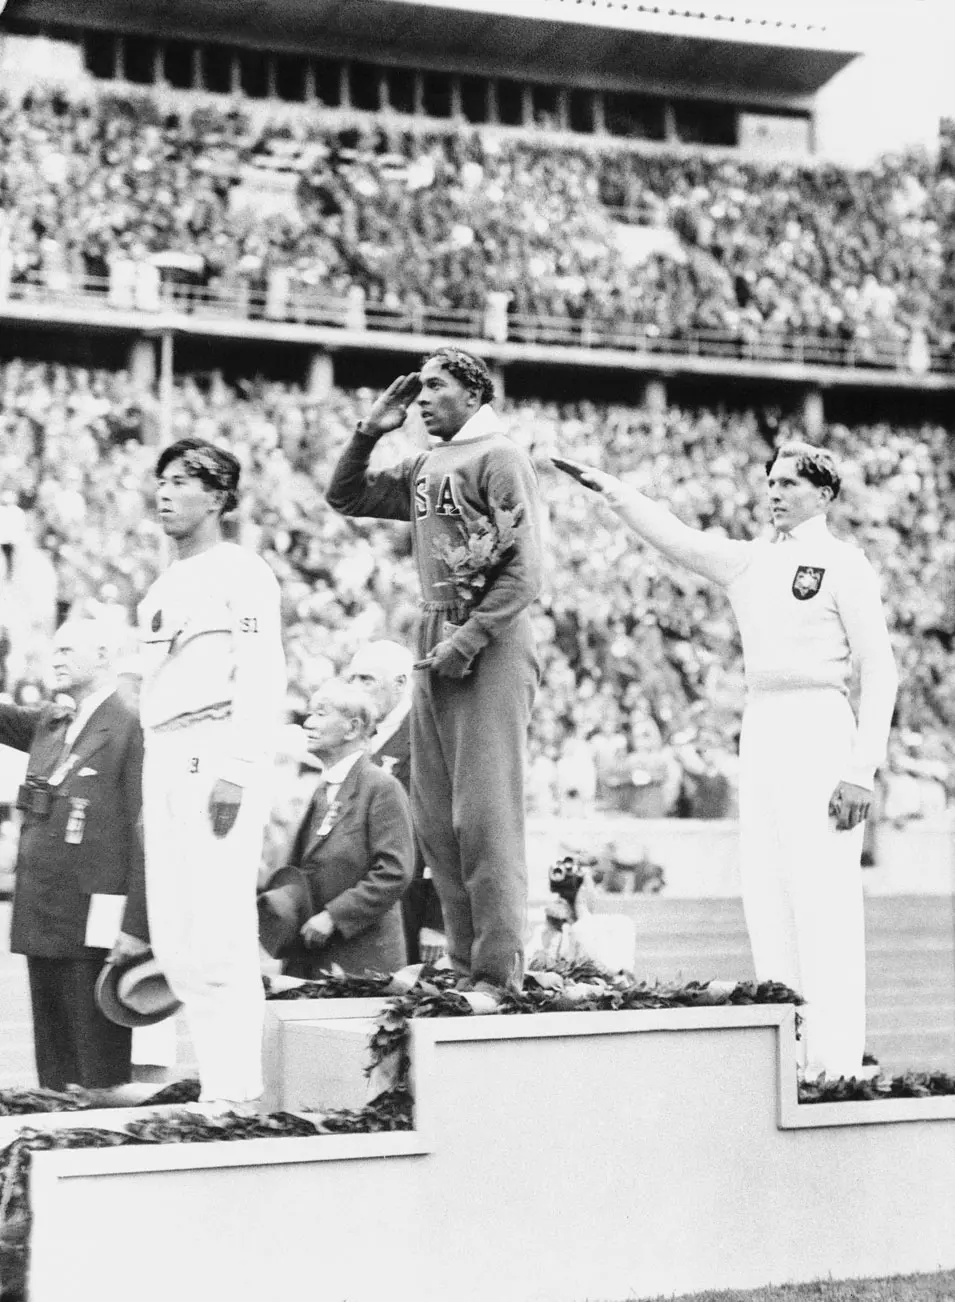 אחד הגיבורים האולימפיים הגדולים. ג'סי אוואנס